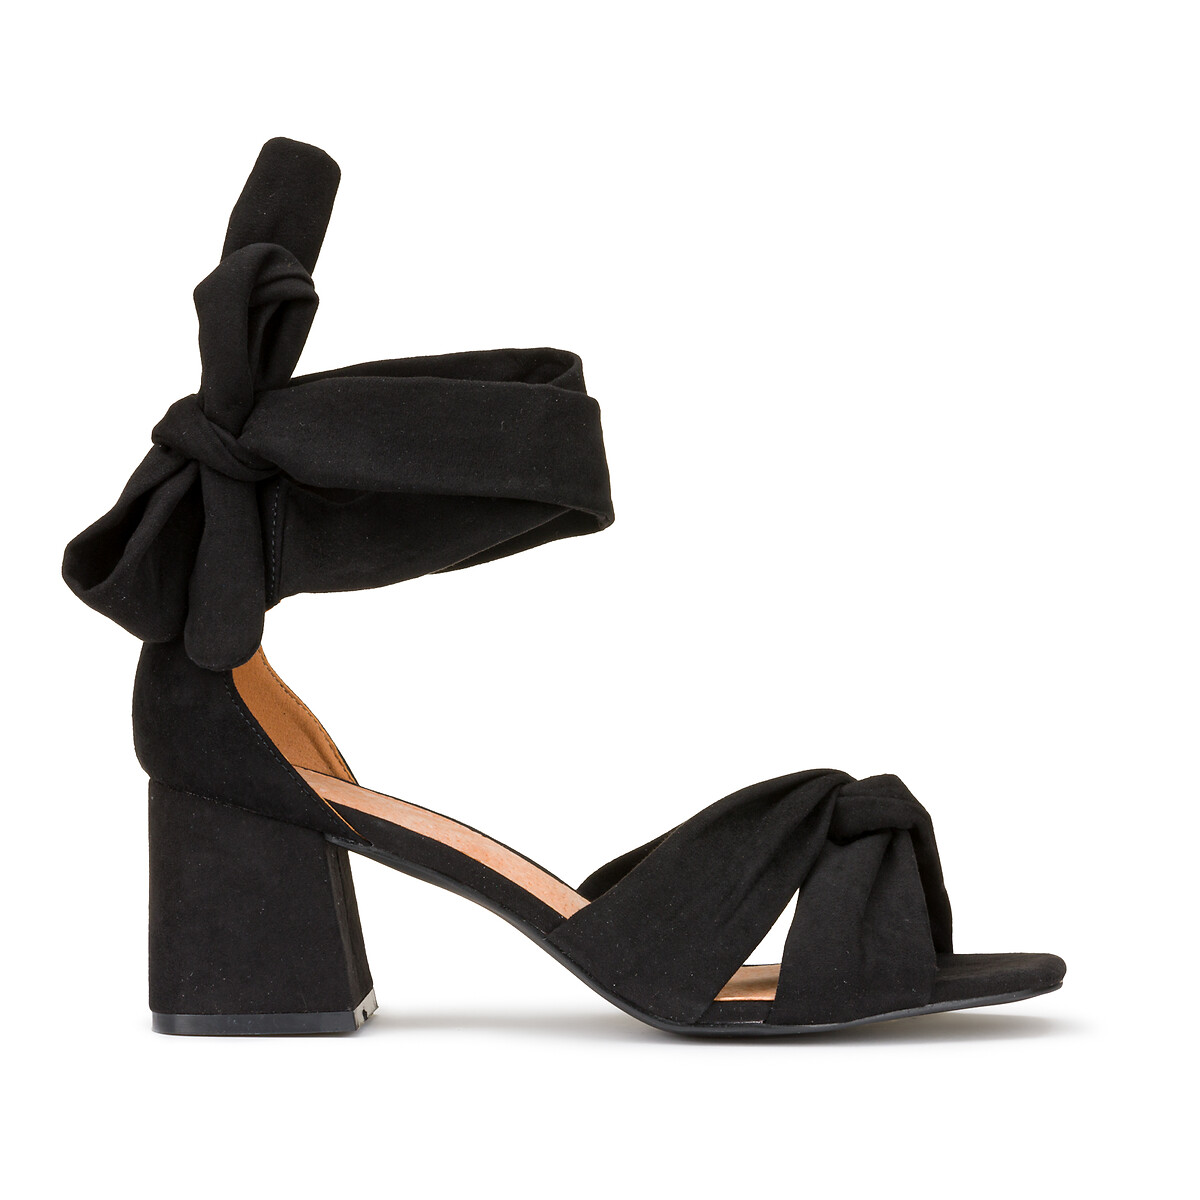 Босоножки с широким каблуком для широкой стопы размеры 38-45 41 черный туфли без задника для широкой стопы размеры 38 45 37 черный